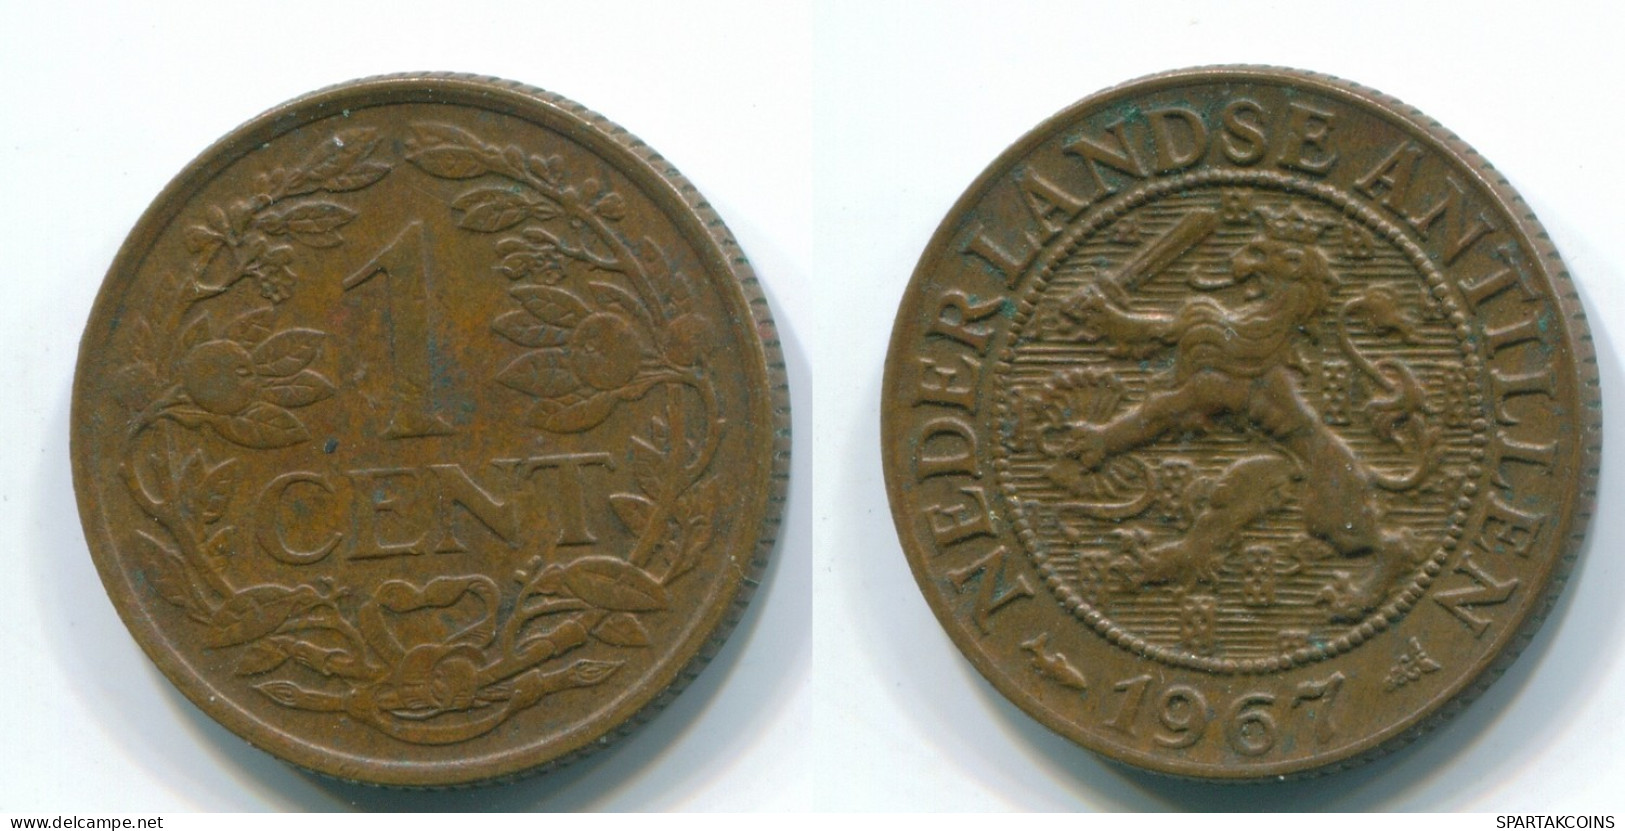 1 CENT 1967 ANTILLAS NEERLANDESAS Bronze Fish Colonial Moneda #S11149.E.A - Antilles Néerlandaises